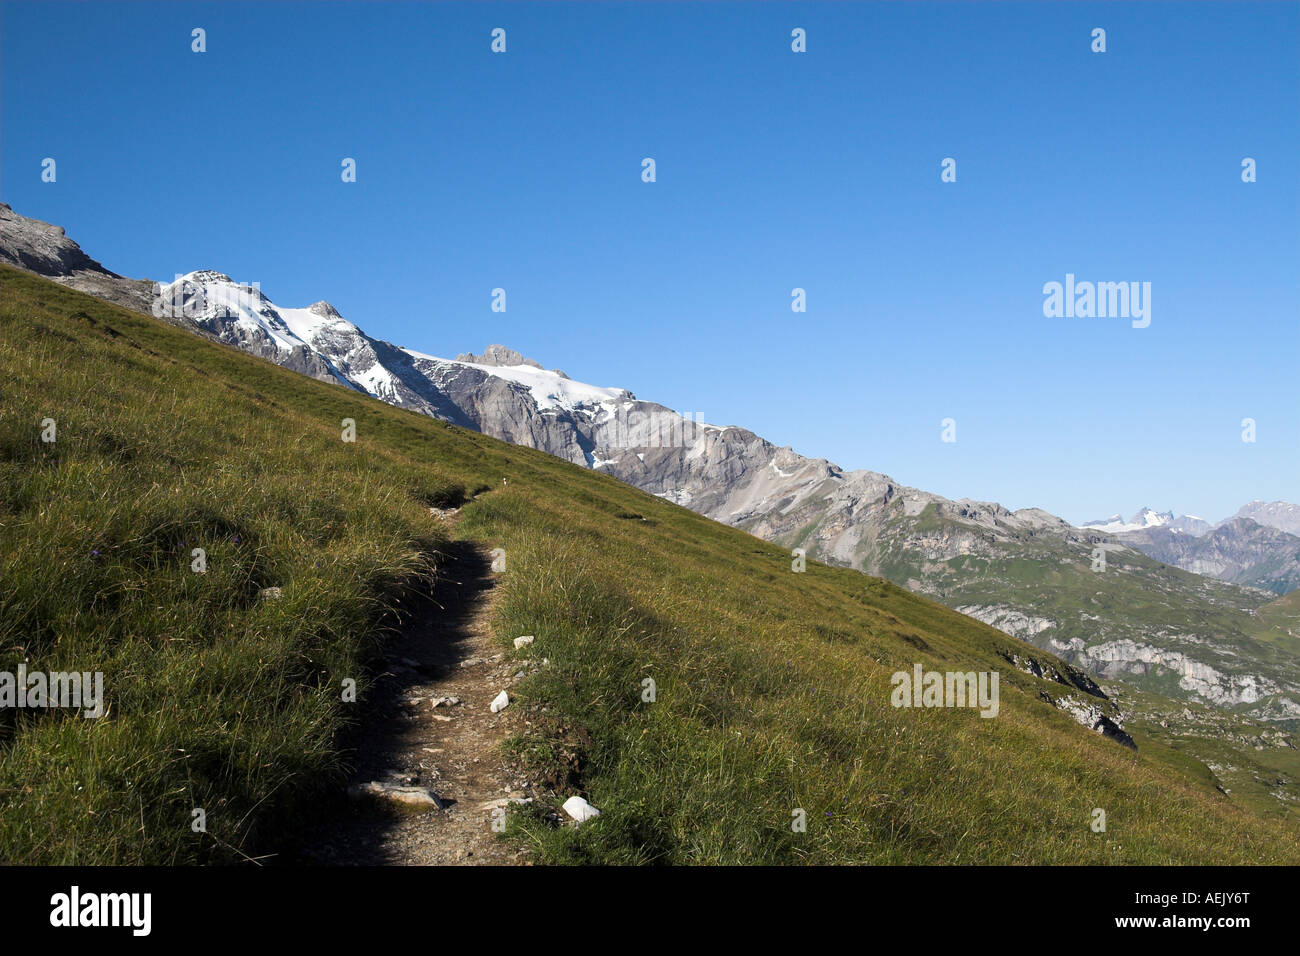 Chemin de montagne Gemsfairenstock, canton de Glaris, Suisse Banque D'Images